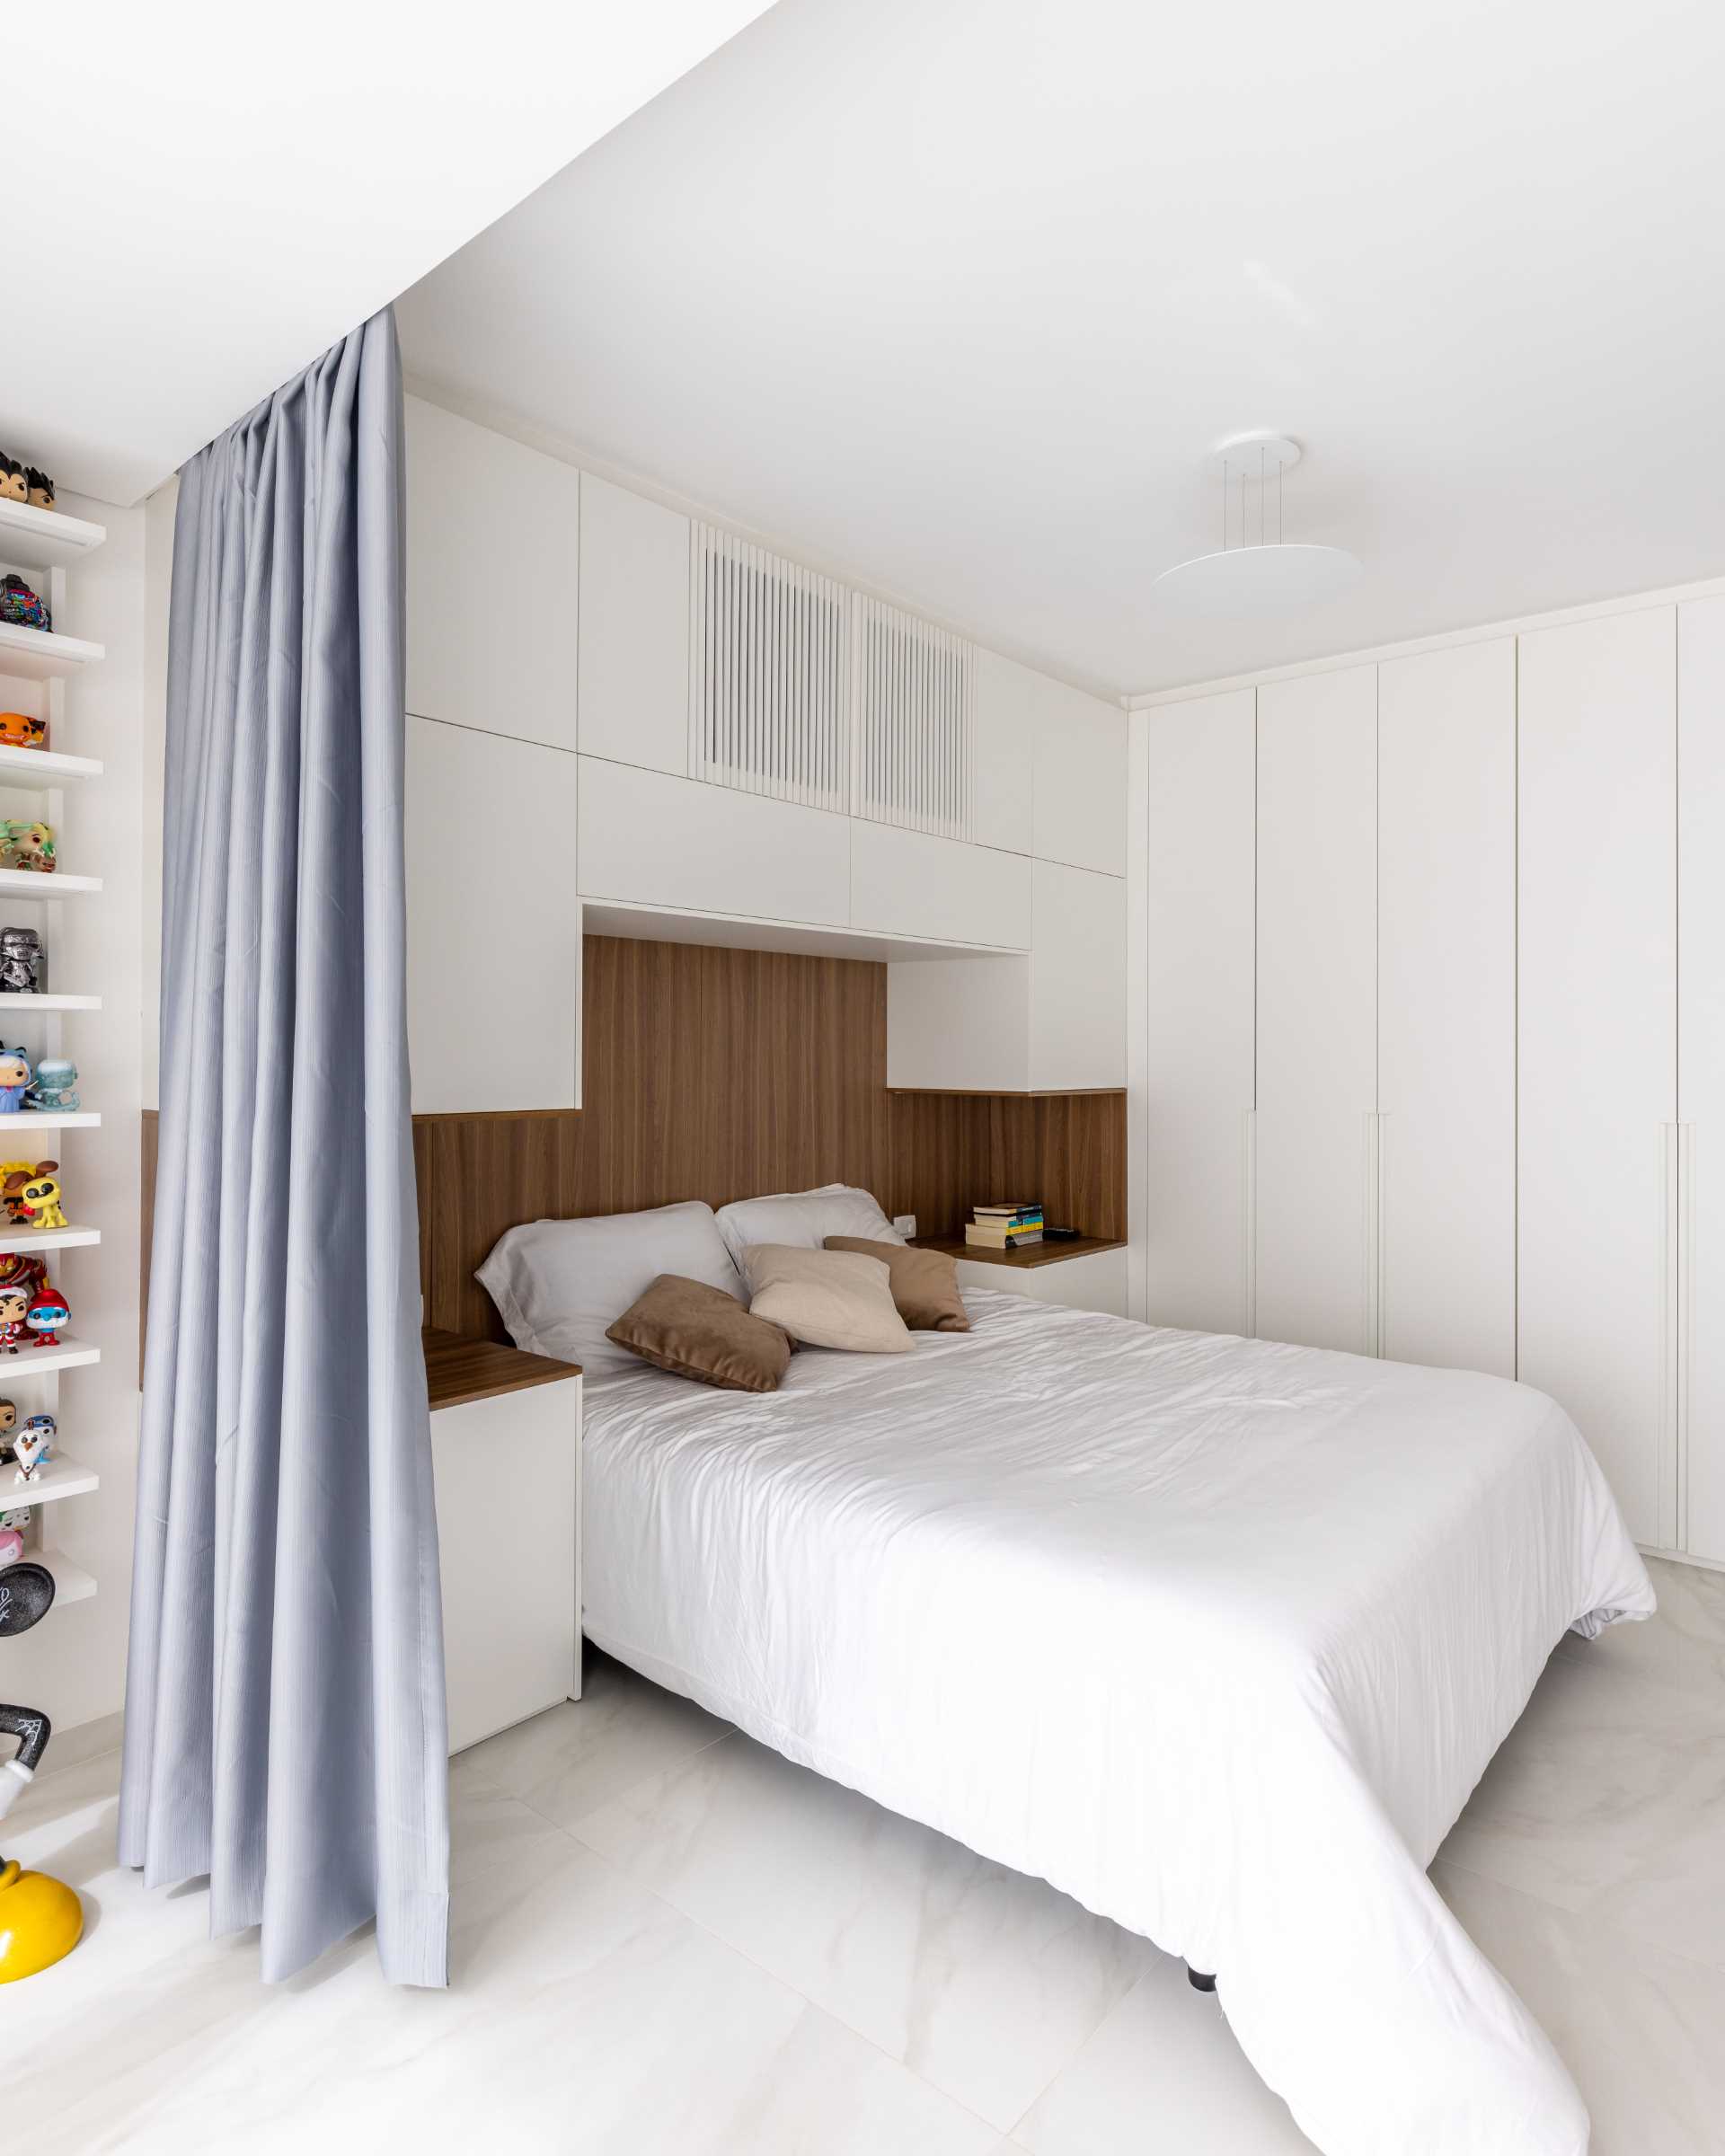 یک اتاق خواب مدرن با طرح باز با پرده برای دیوارها، انباری و تخته سر چوبی.